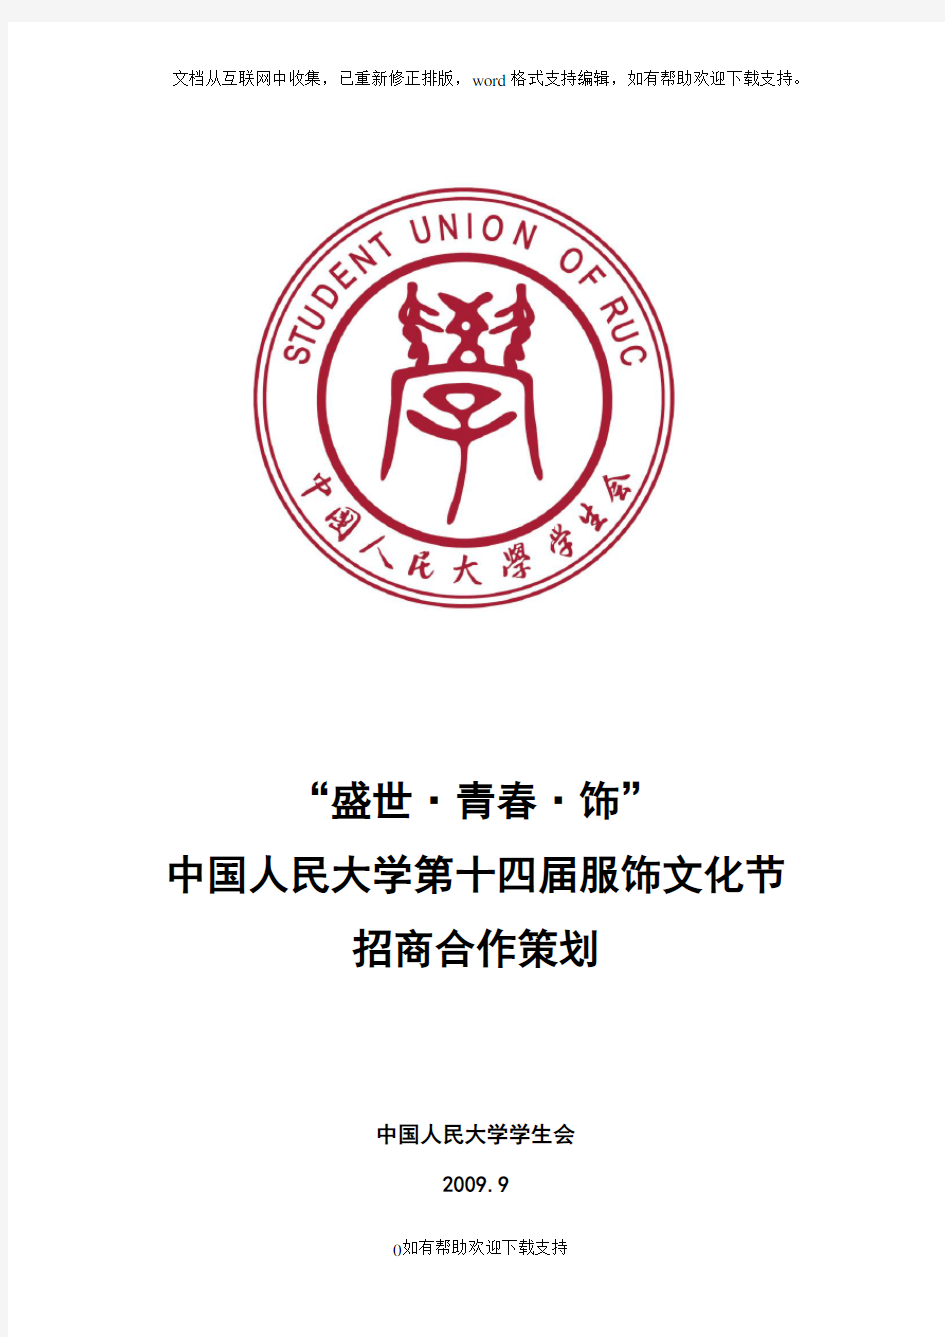 中国人民大学第十四届服饰文化节策划